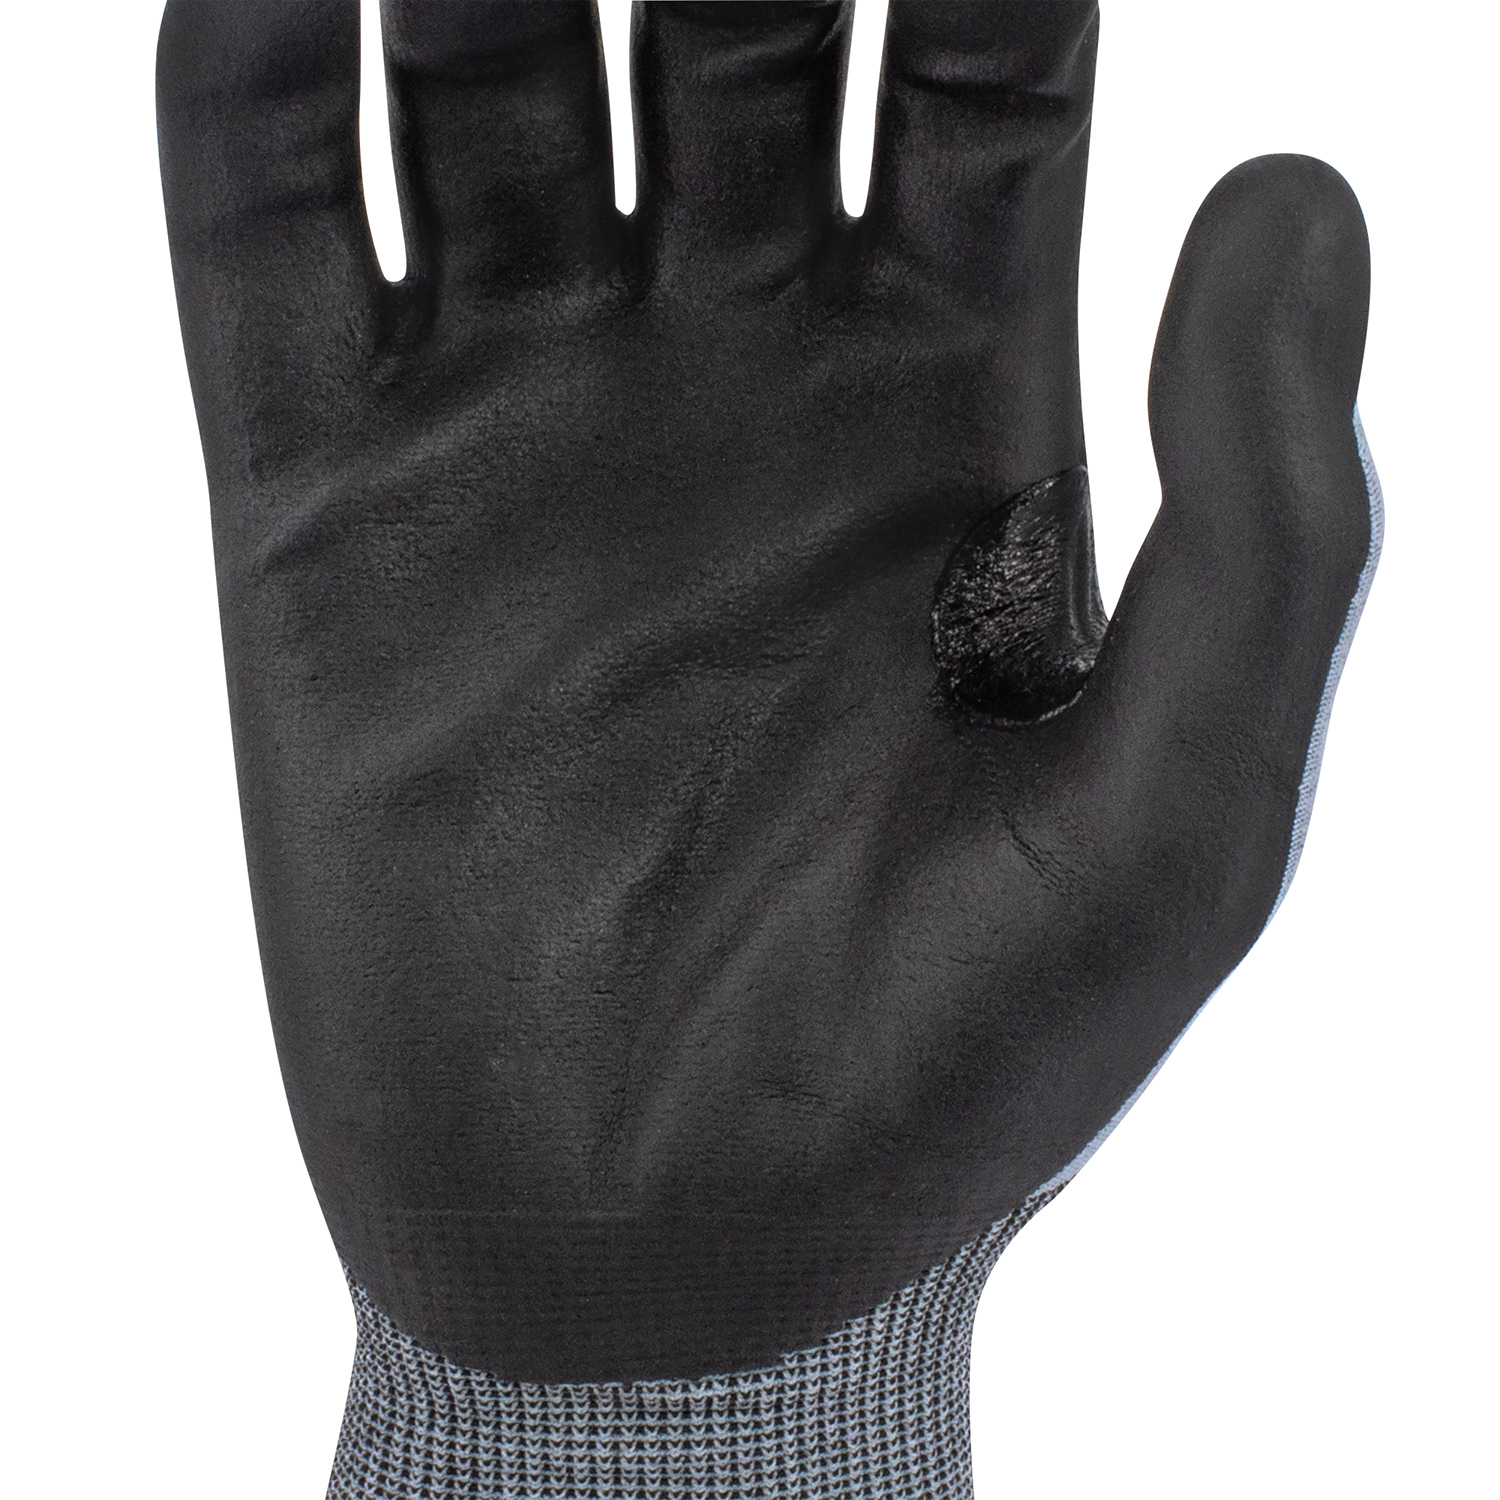 Radians RWG708 TEKTYE Cut Level A4 Nitrile Palm Work Gloves